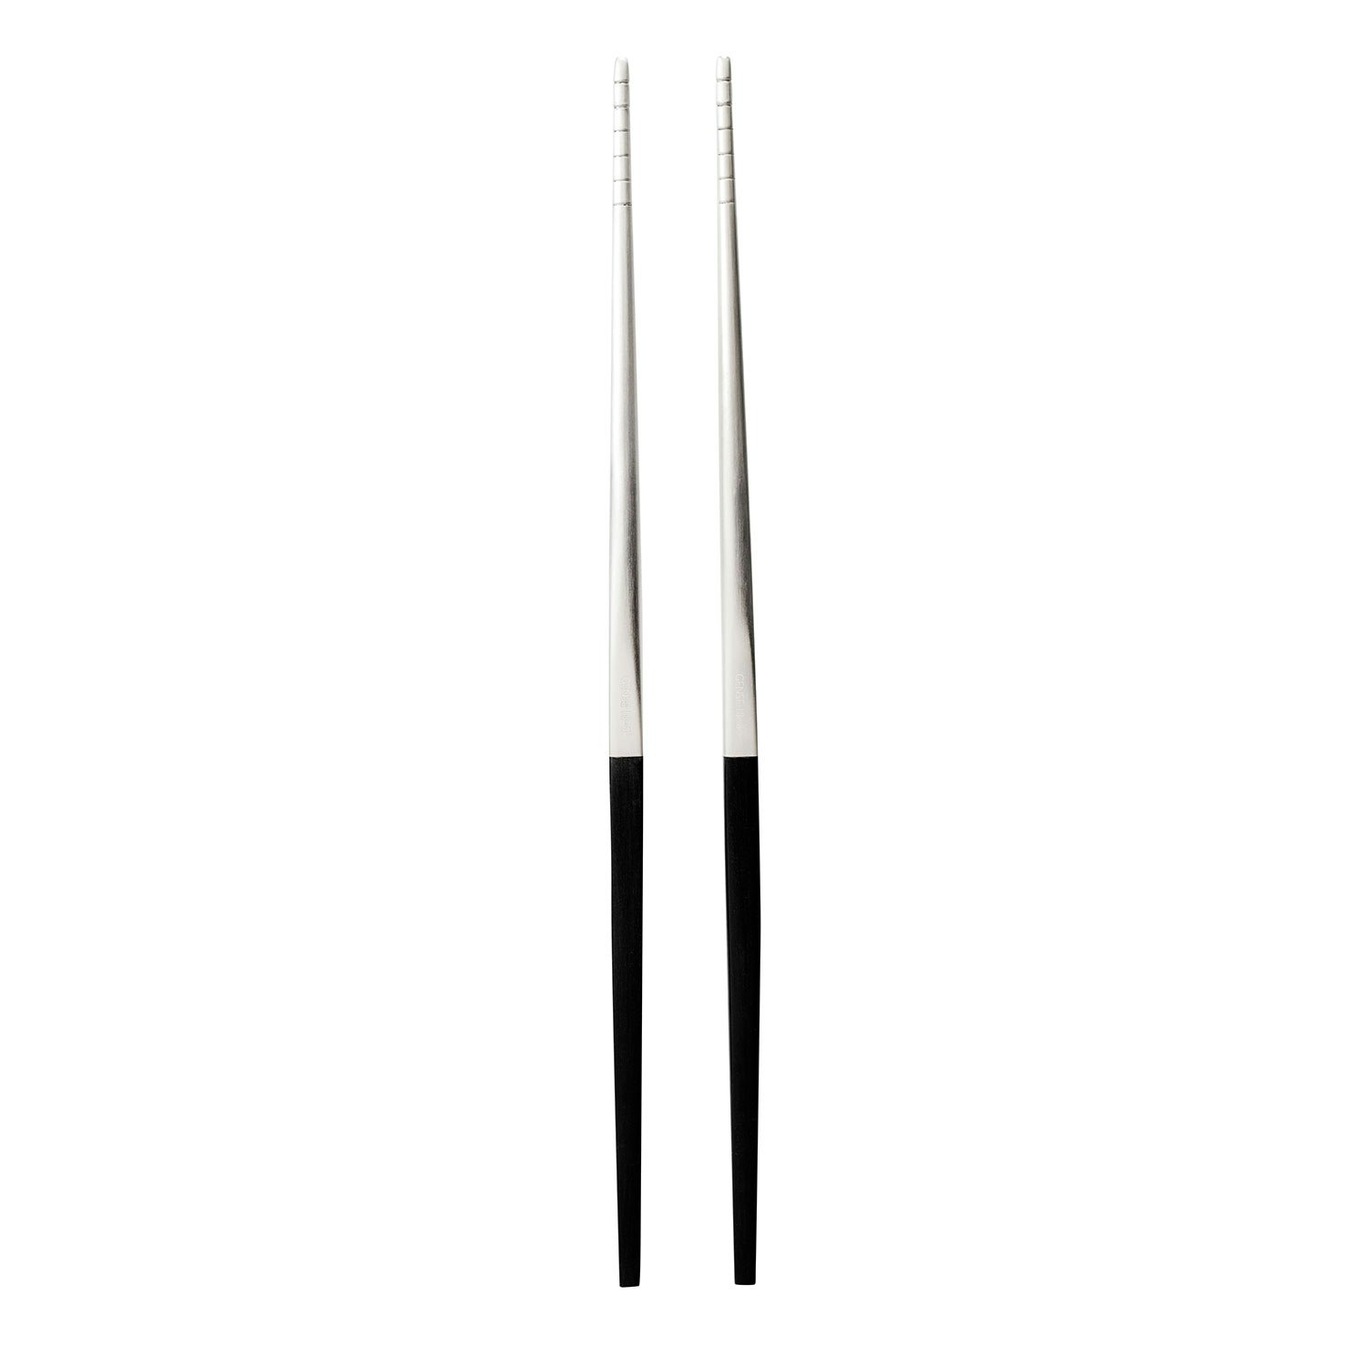 https://royaldesign.com/image/2/gense-focus-de-luxe-chopsticks-3?w=800&quality=80